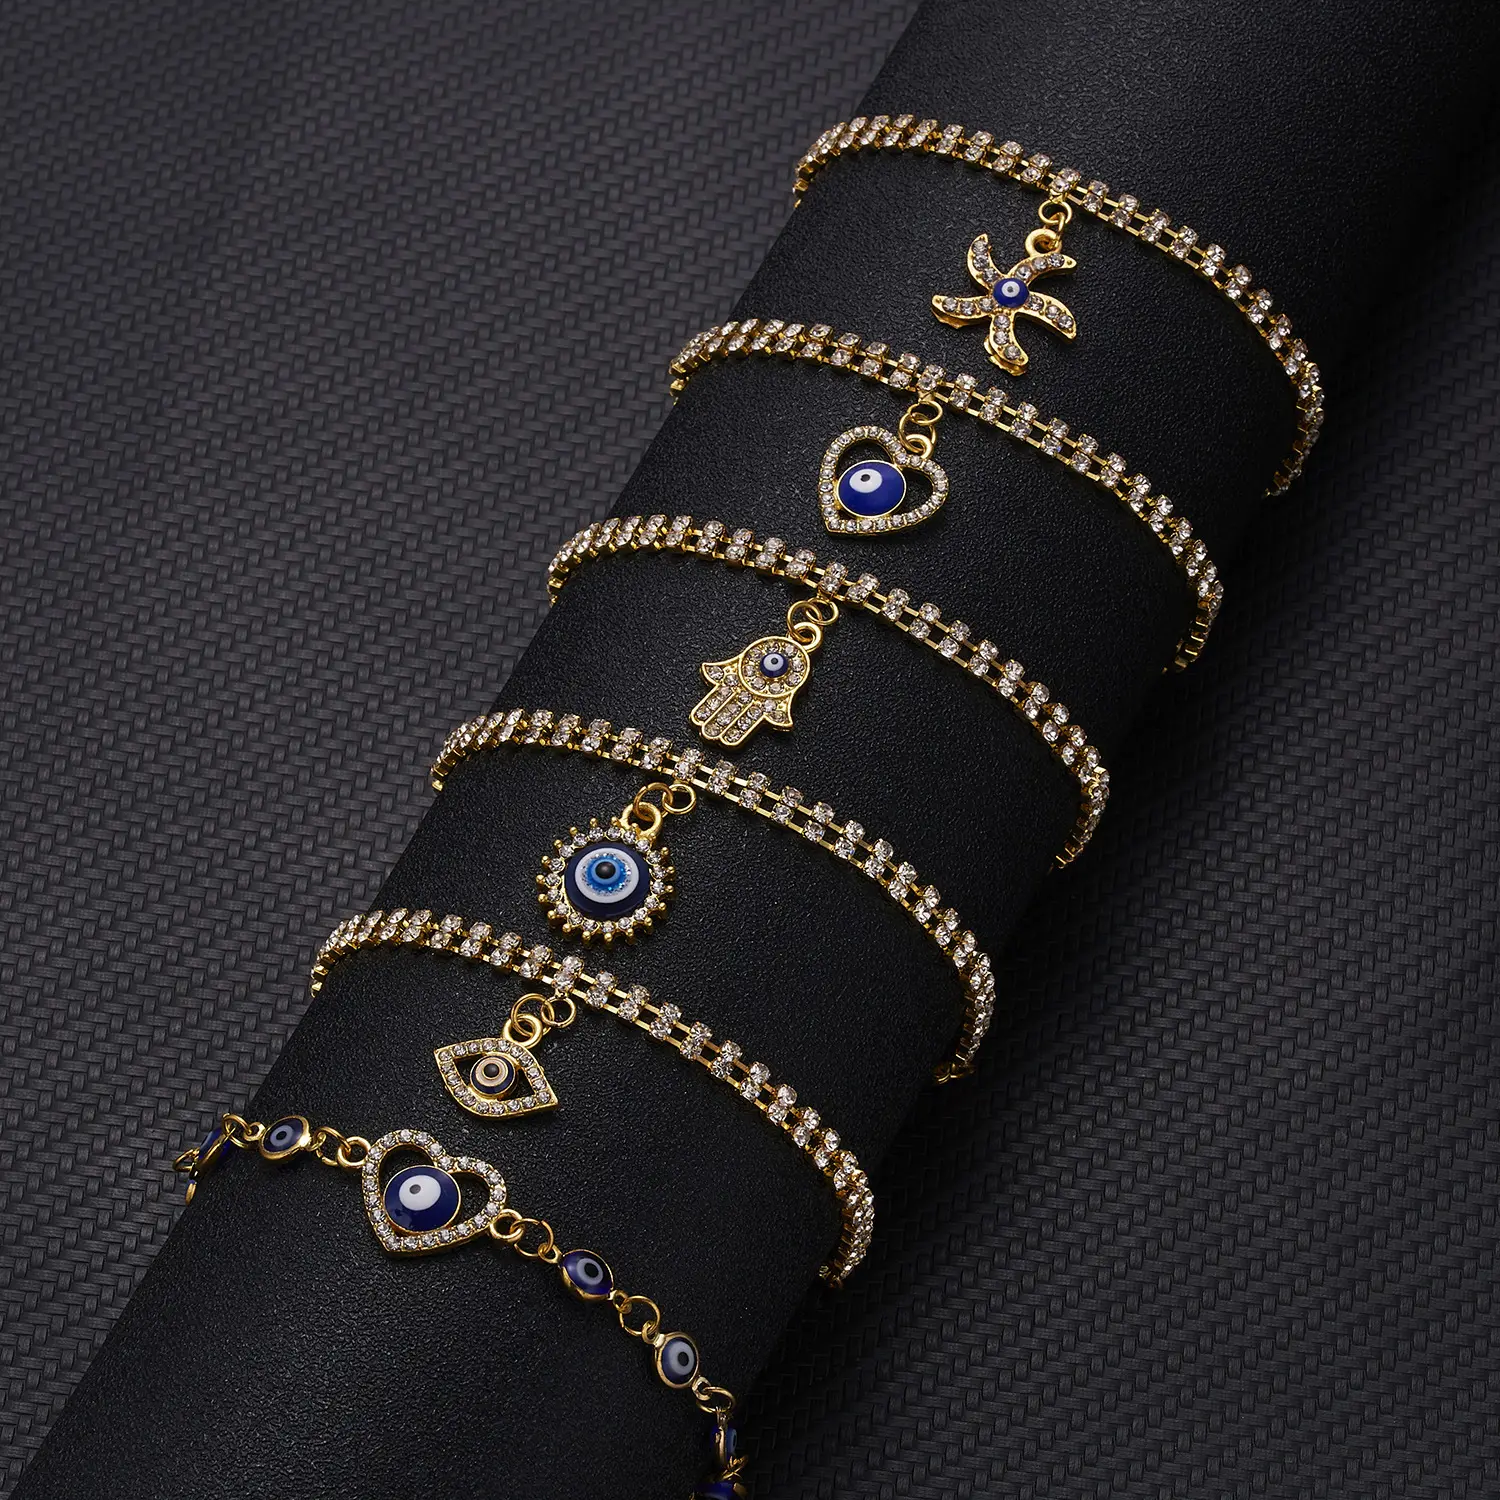 HOVANCI 18k plaqué or chaîne bracelet bijoux de conception 9 bracelets verser femmes paume géométrique bleu yeux bracelet en cristal